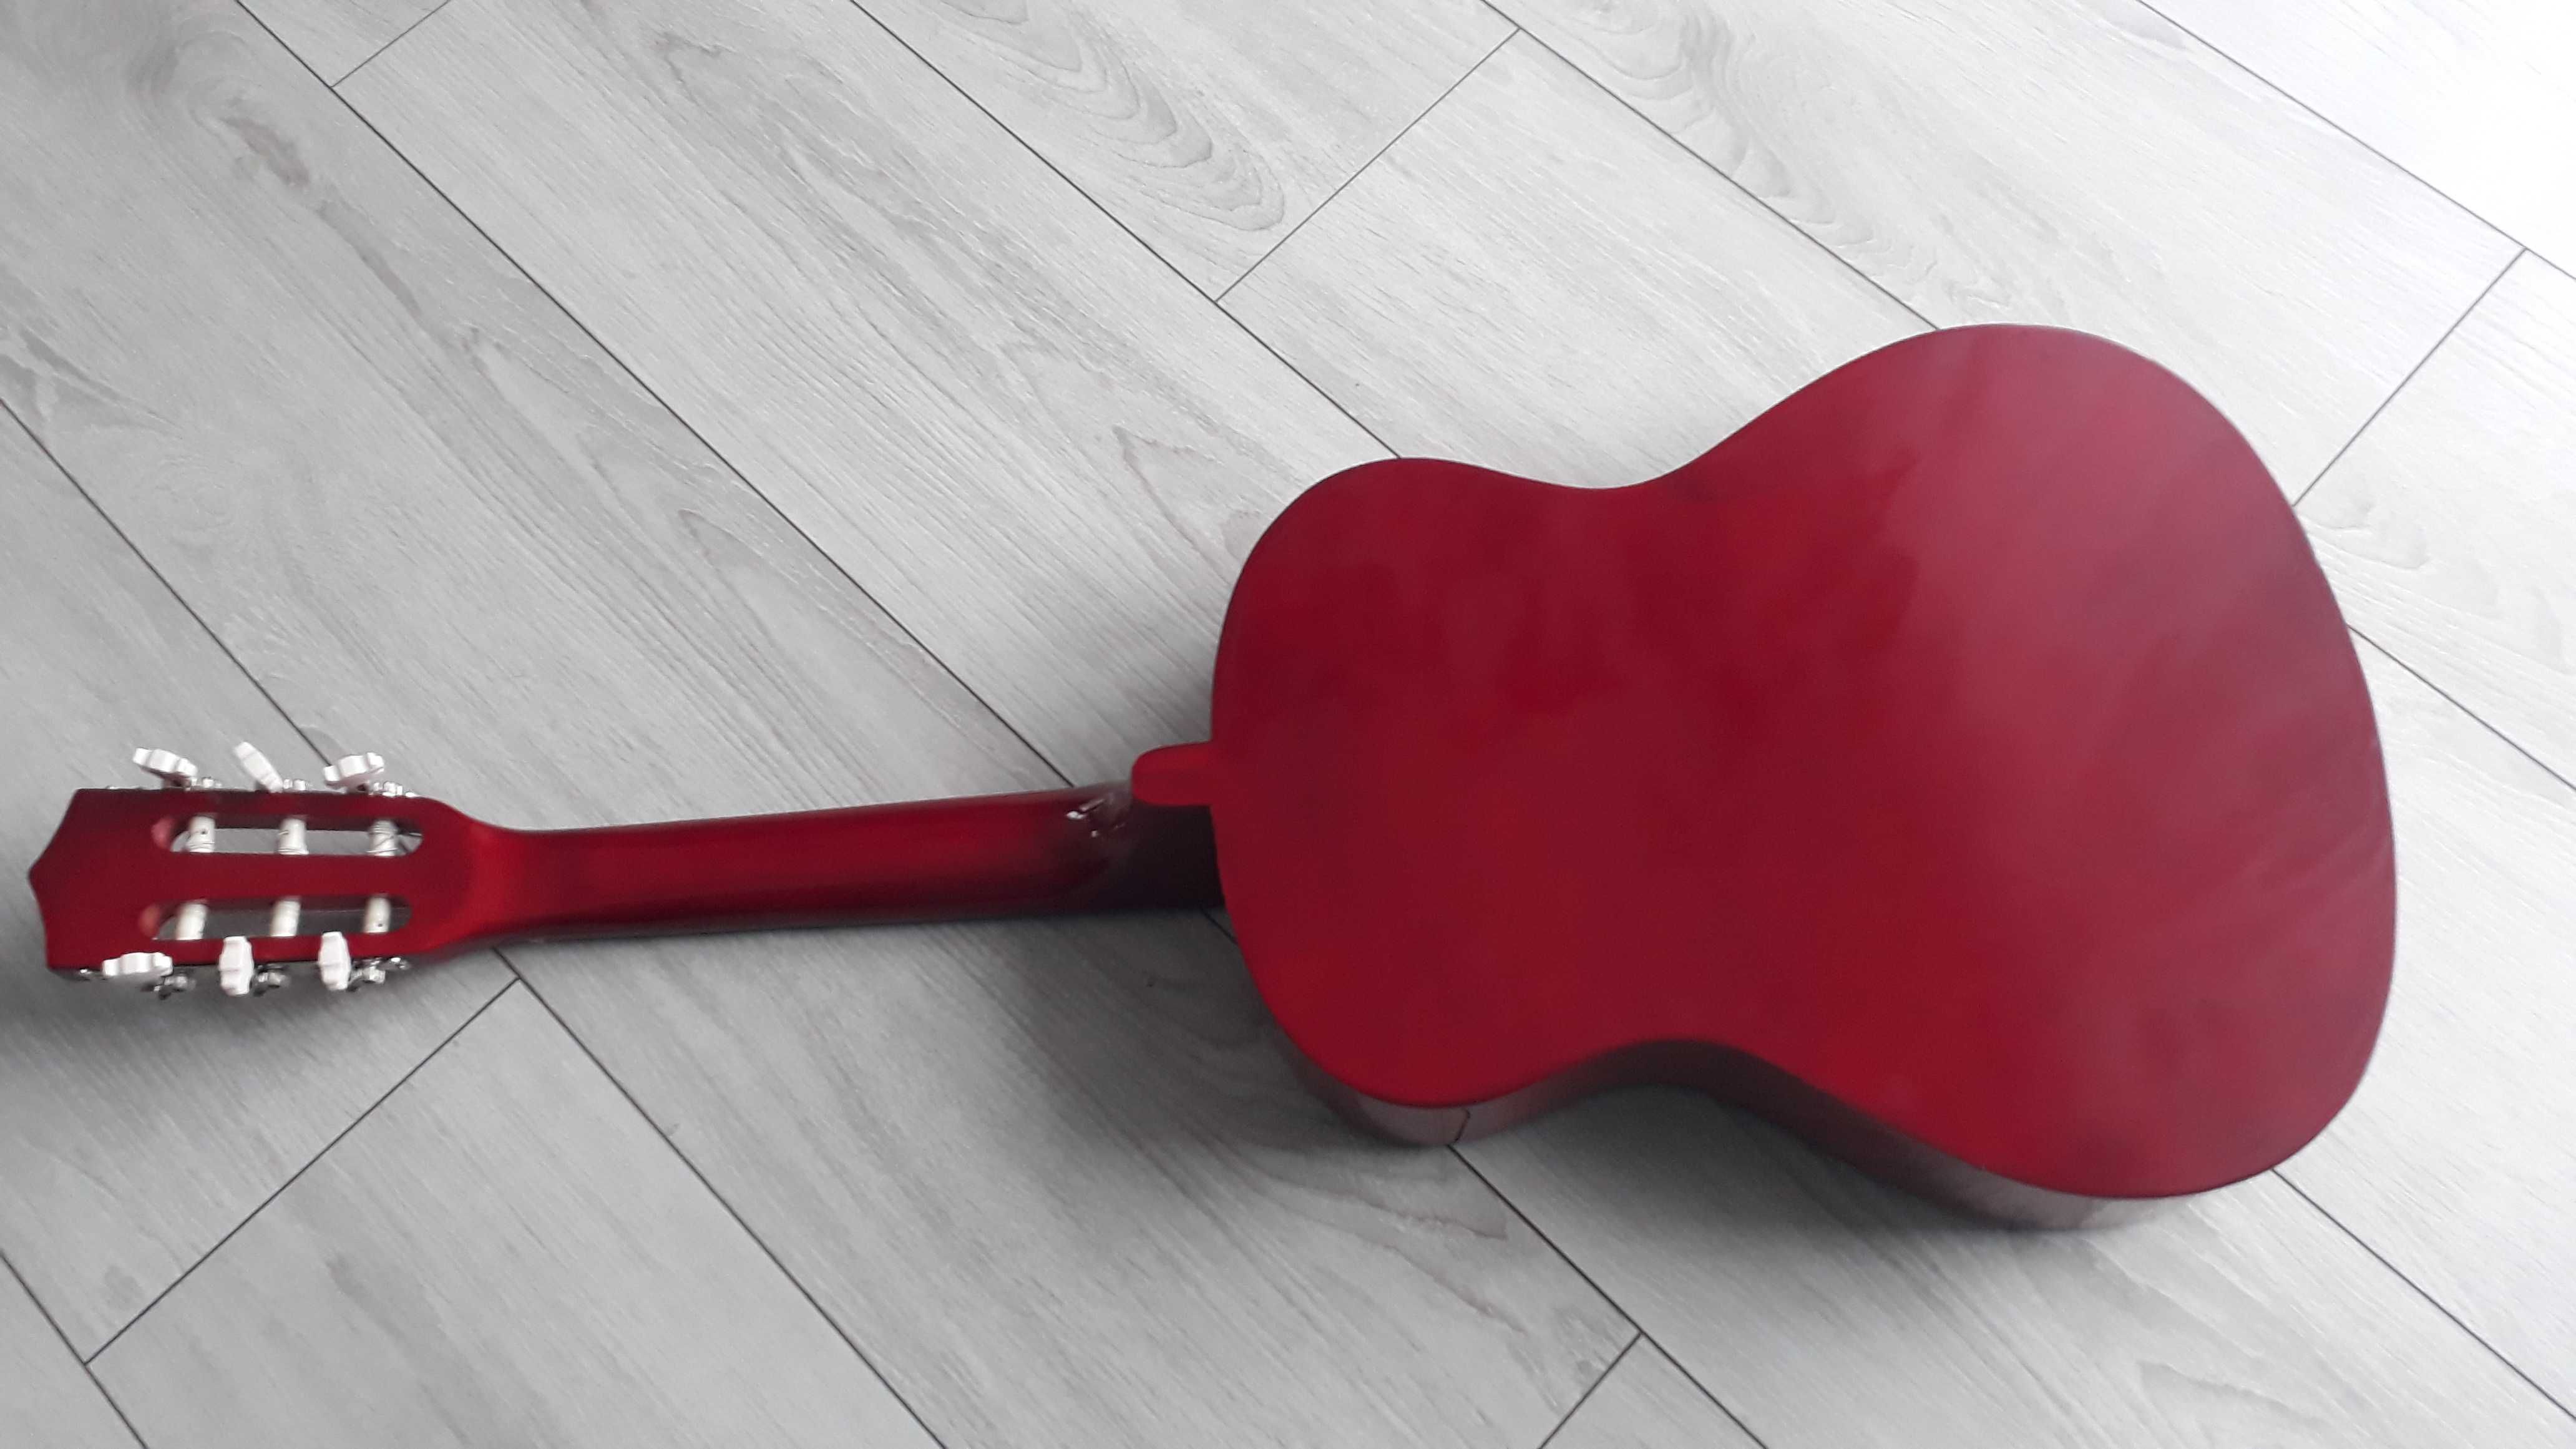 Gitara klasyczna 3/4 do nauki gry dla dzieci czerwona nowa okazja